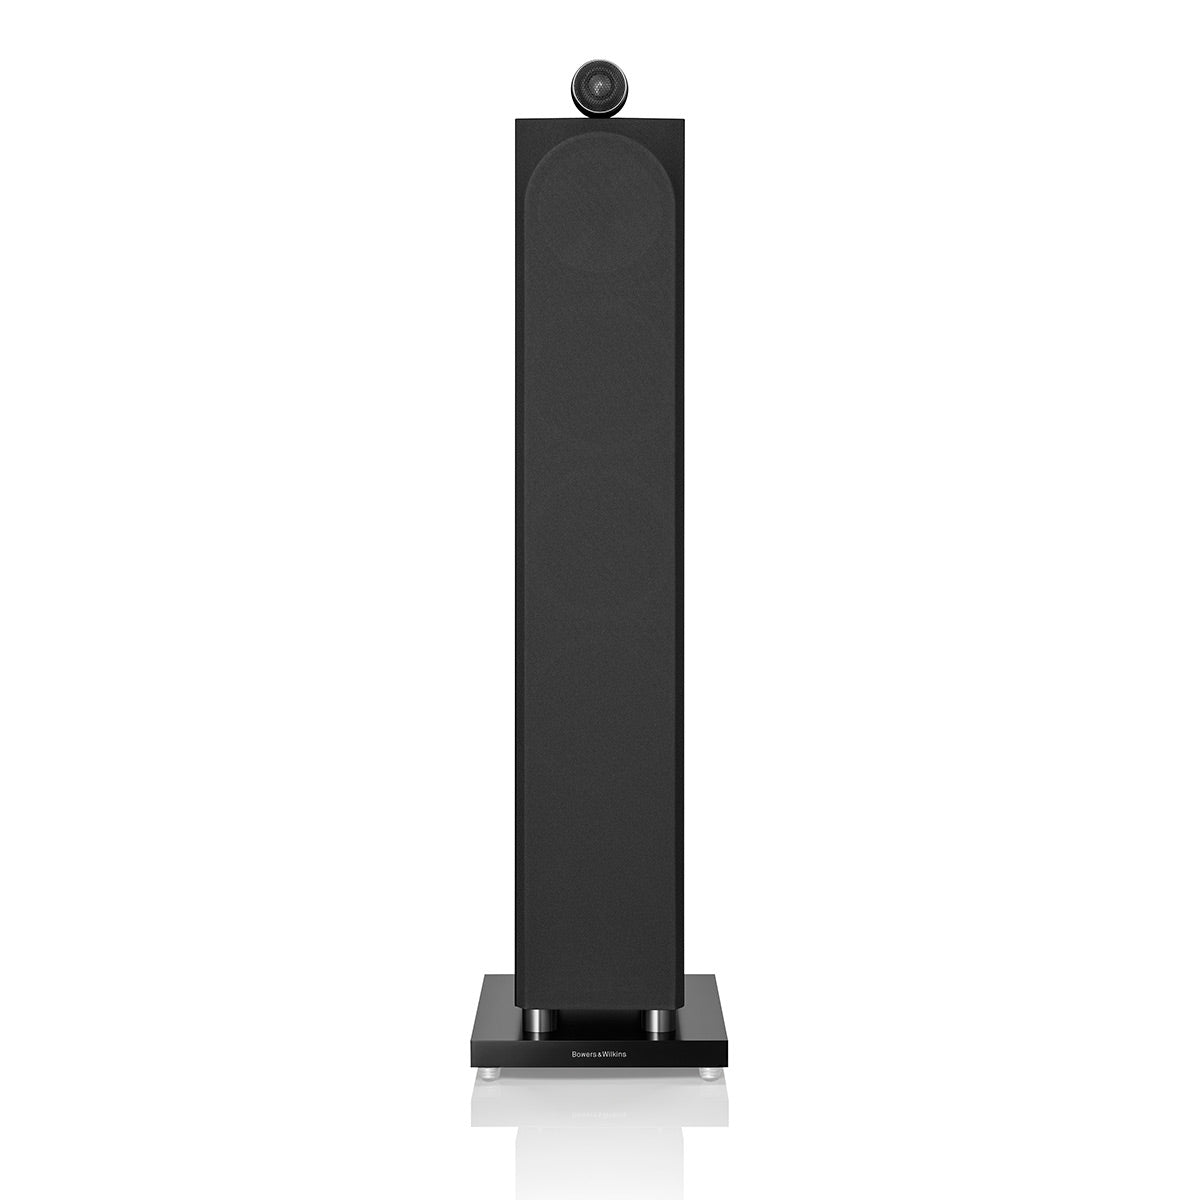 Bowers & Wilkins 702 S3 3-Way Floorstanding Speaker - Pair (Gloss Black)